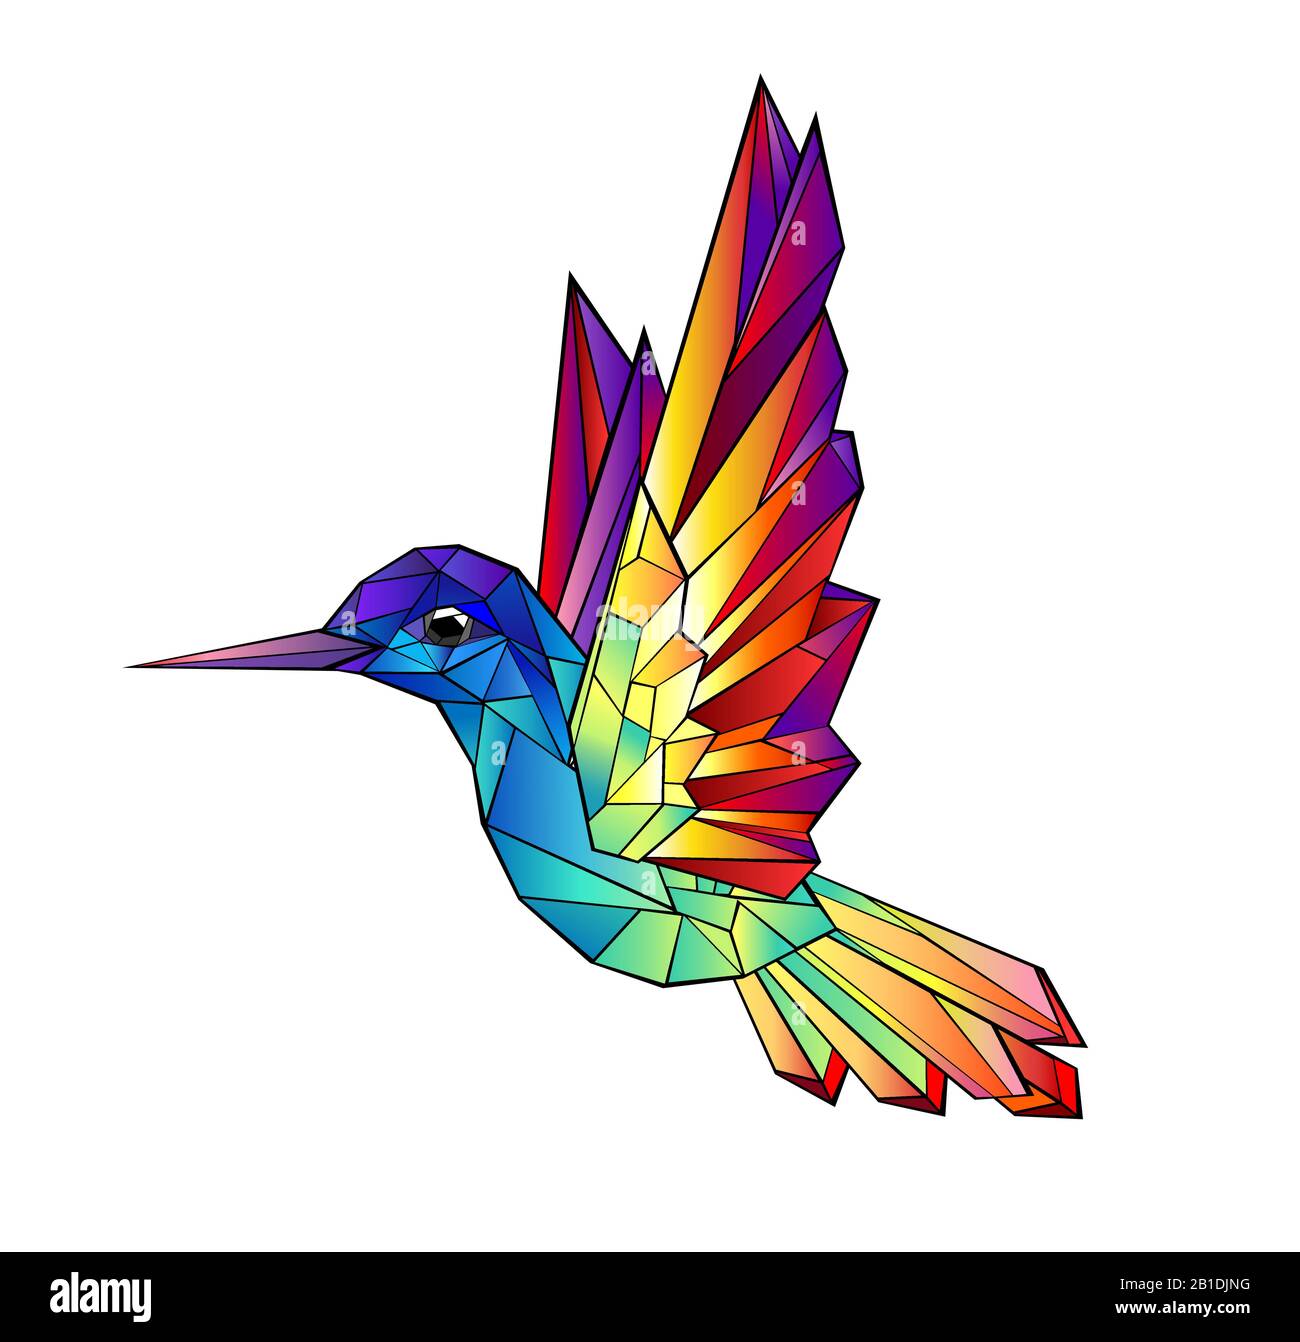 Arcobaleno artisticamente disegnato, vibrante, luminoso, hummingbirds poligonali su sfondo bianco. Stile tatuaggio. Illustrazione Vettoriale